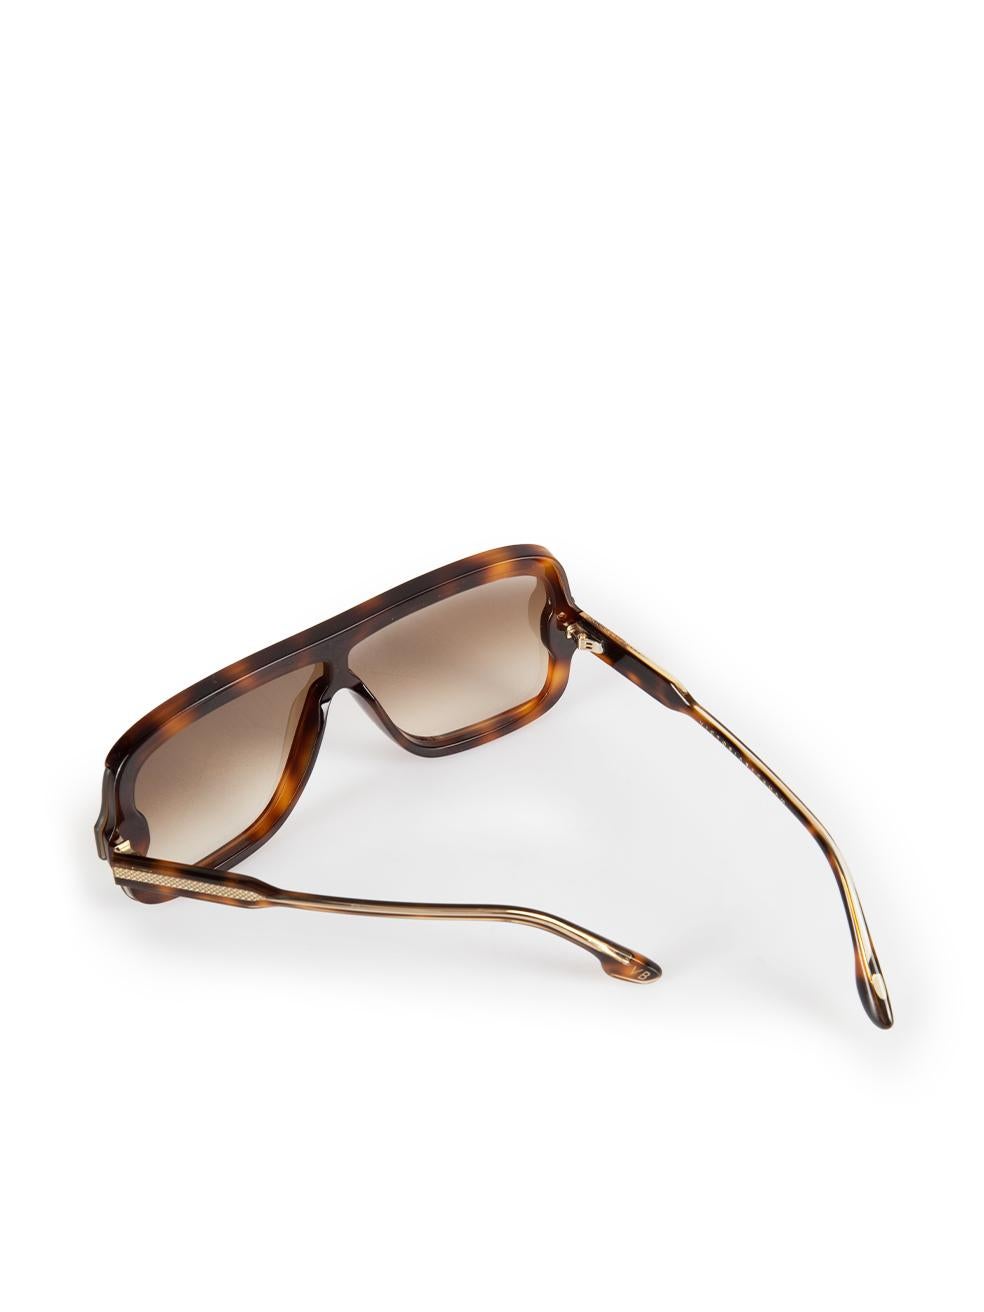 Victoria Beckham Brown Tortoiseshell Shield Sunglasses For Sale 3